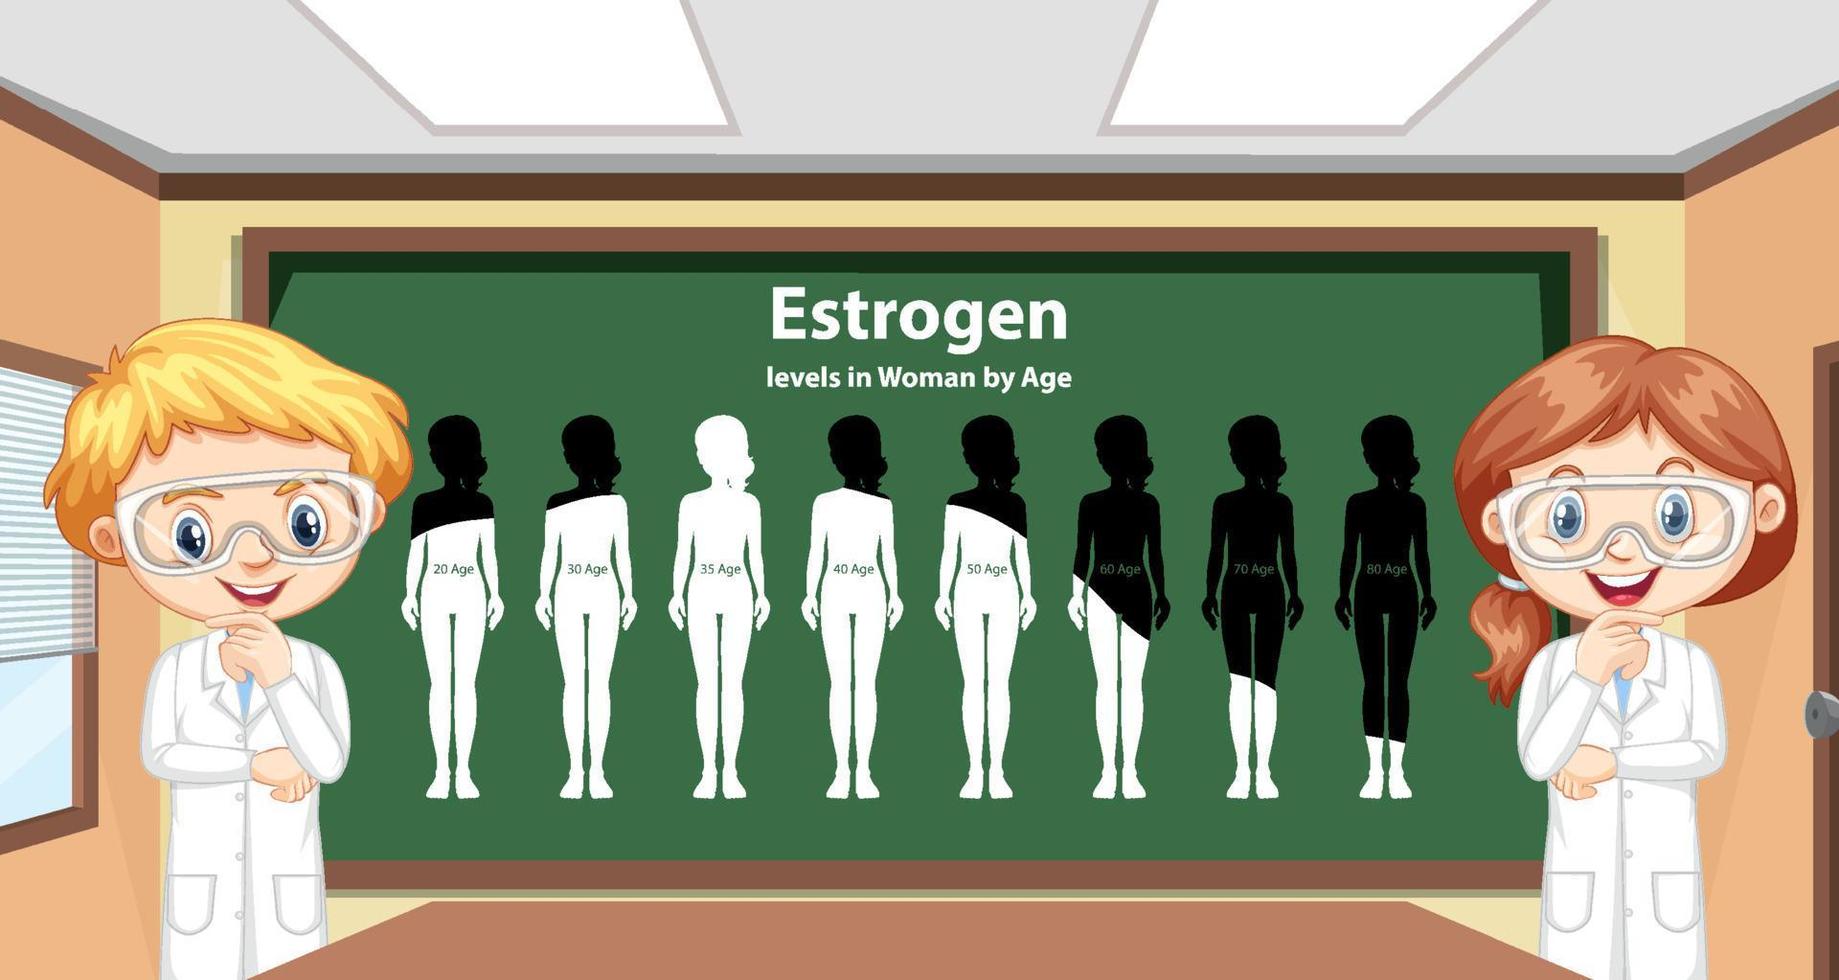 östrogennivåer hos kvinnor efter ålder vektor